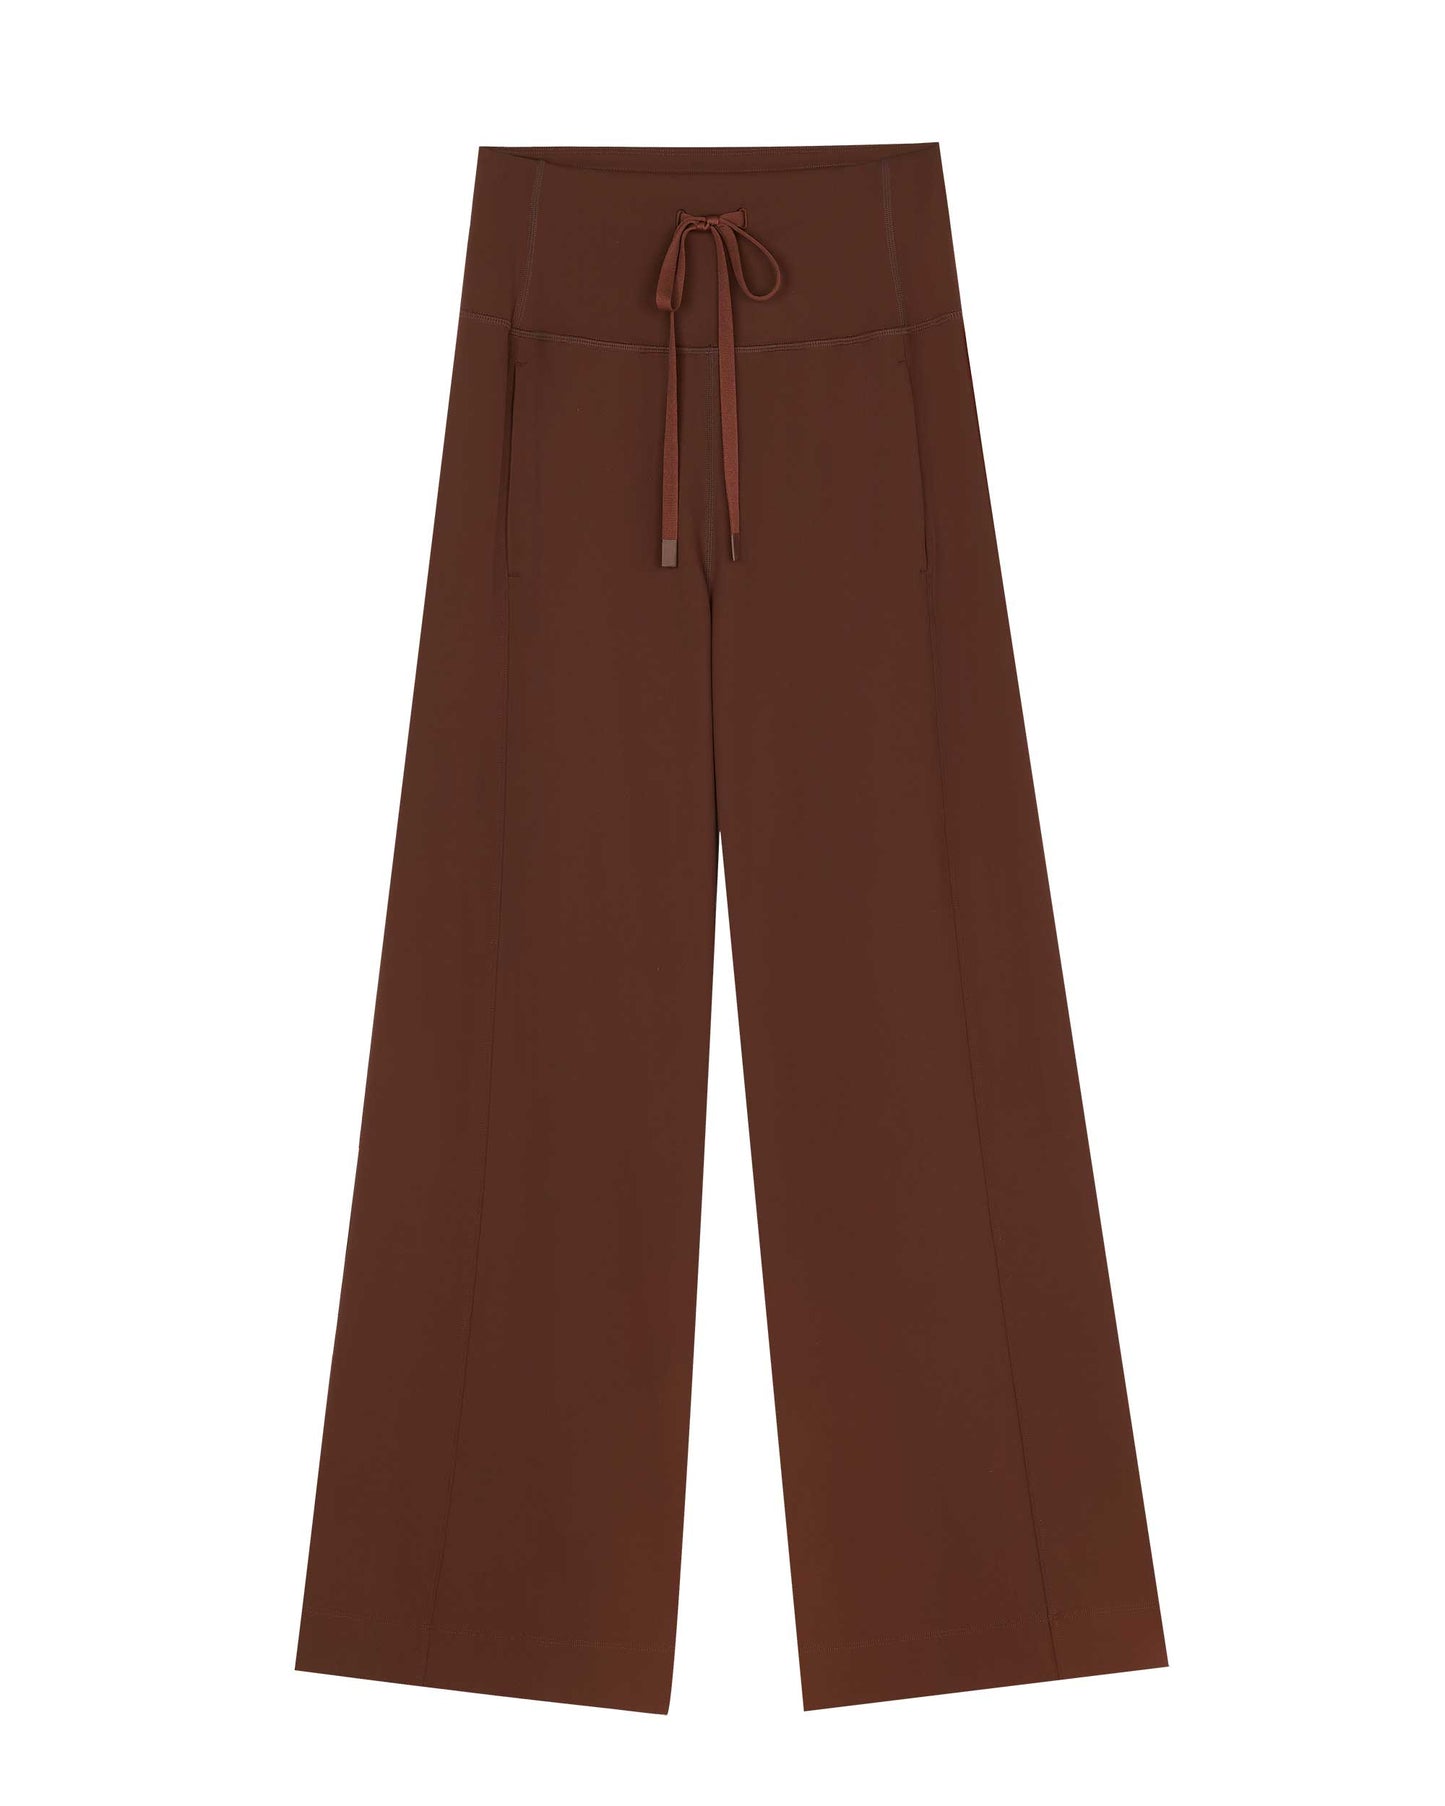 reddish brown pants